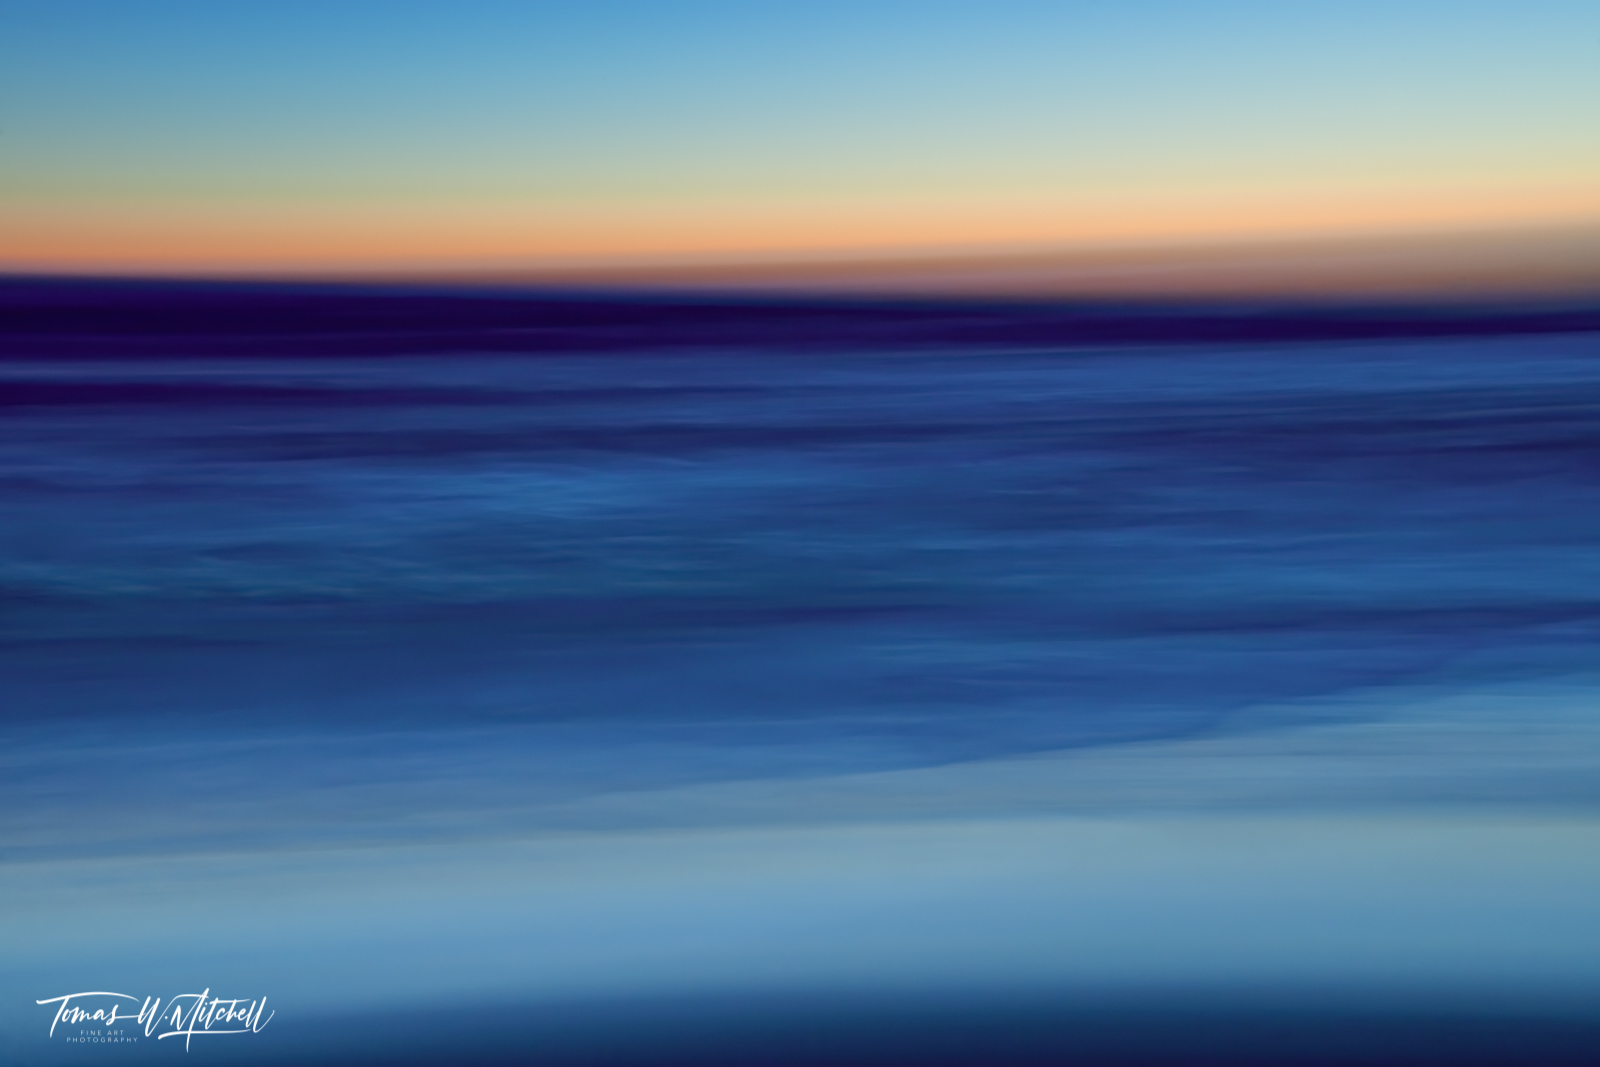 abstract sunset on ocean monterey california